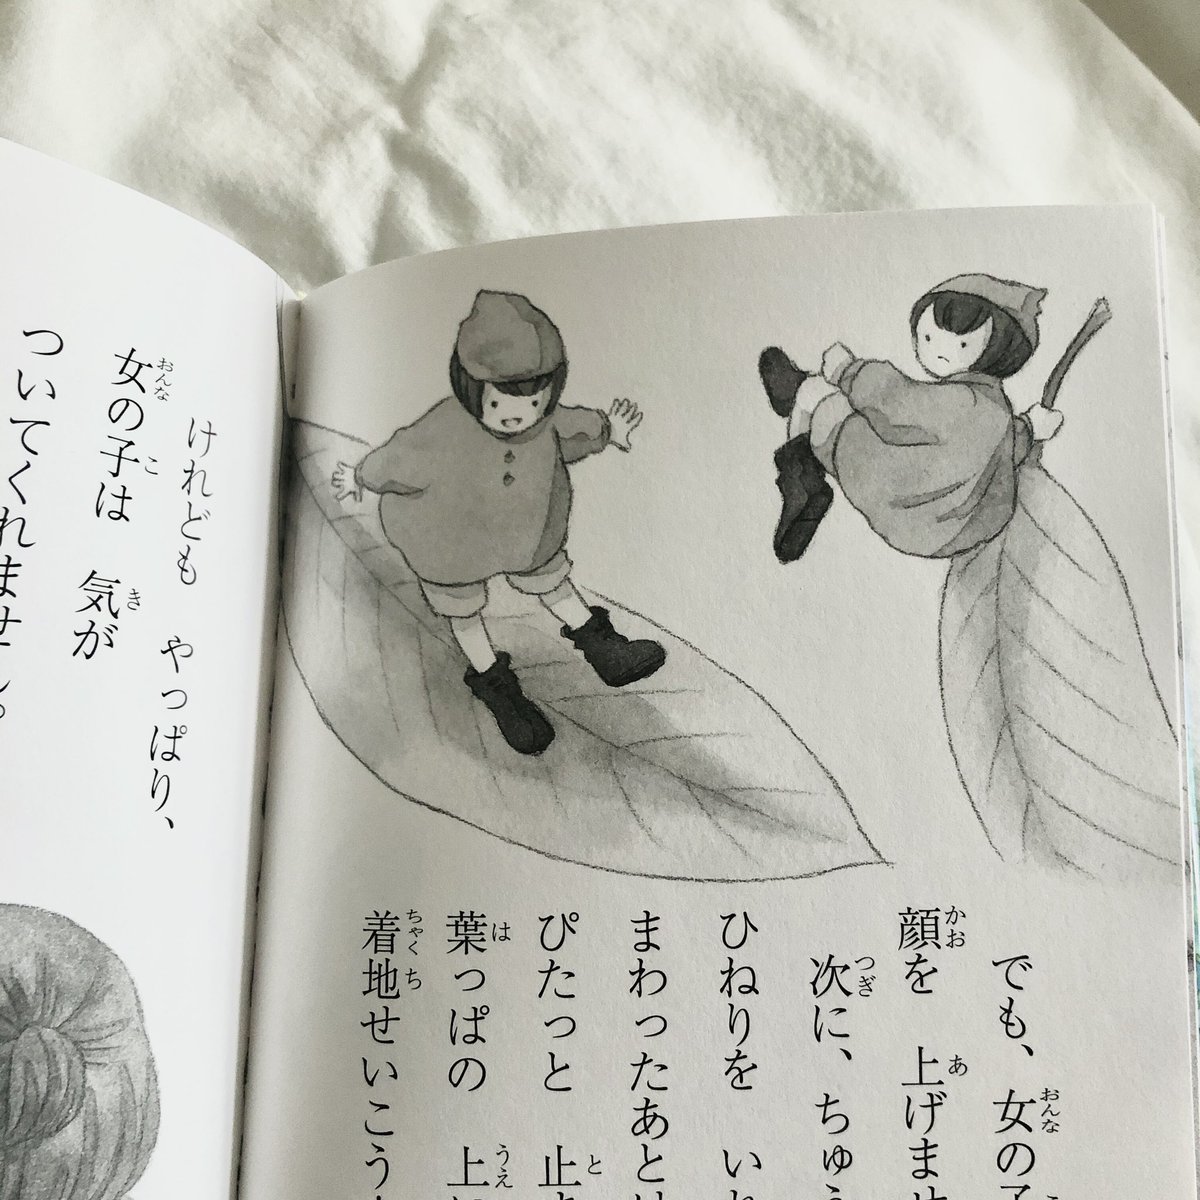 □お知らせ□
3月中旬発売の濱野京子さん作『葉っぱにのって』(金の星社)の挿画を描かせていただきました?
ずっと憧れていた挿画のお仕事ができて本当に嬉しかったです…!
葉っぱの妖精クルミと女の子の心温まる素敵な物語です?
是非お手に取っていただけたら嬉しいです 